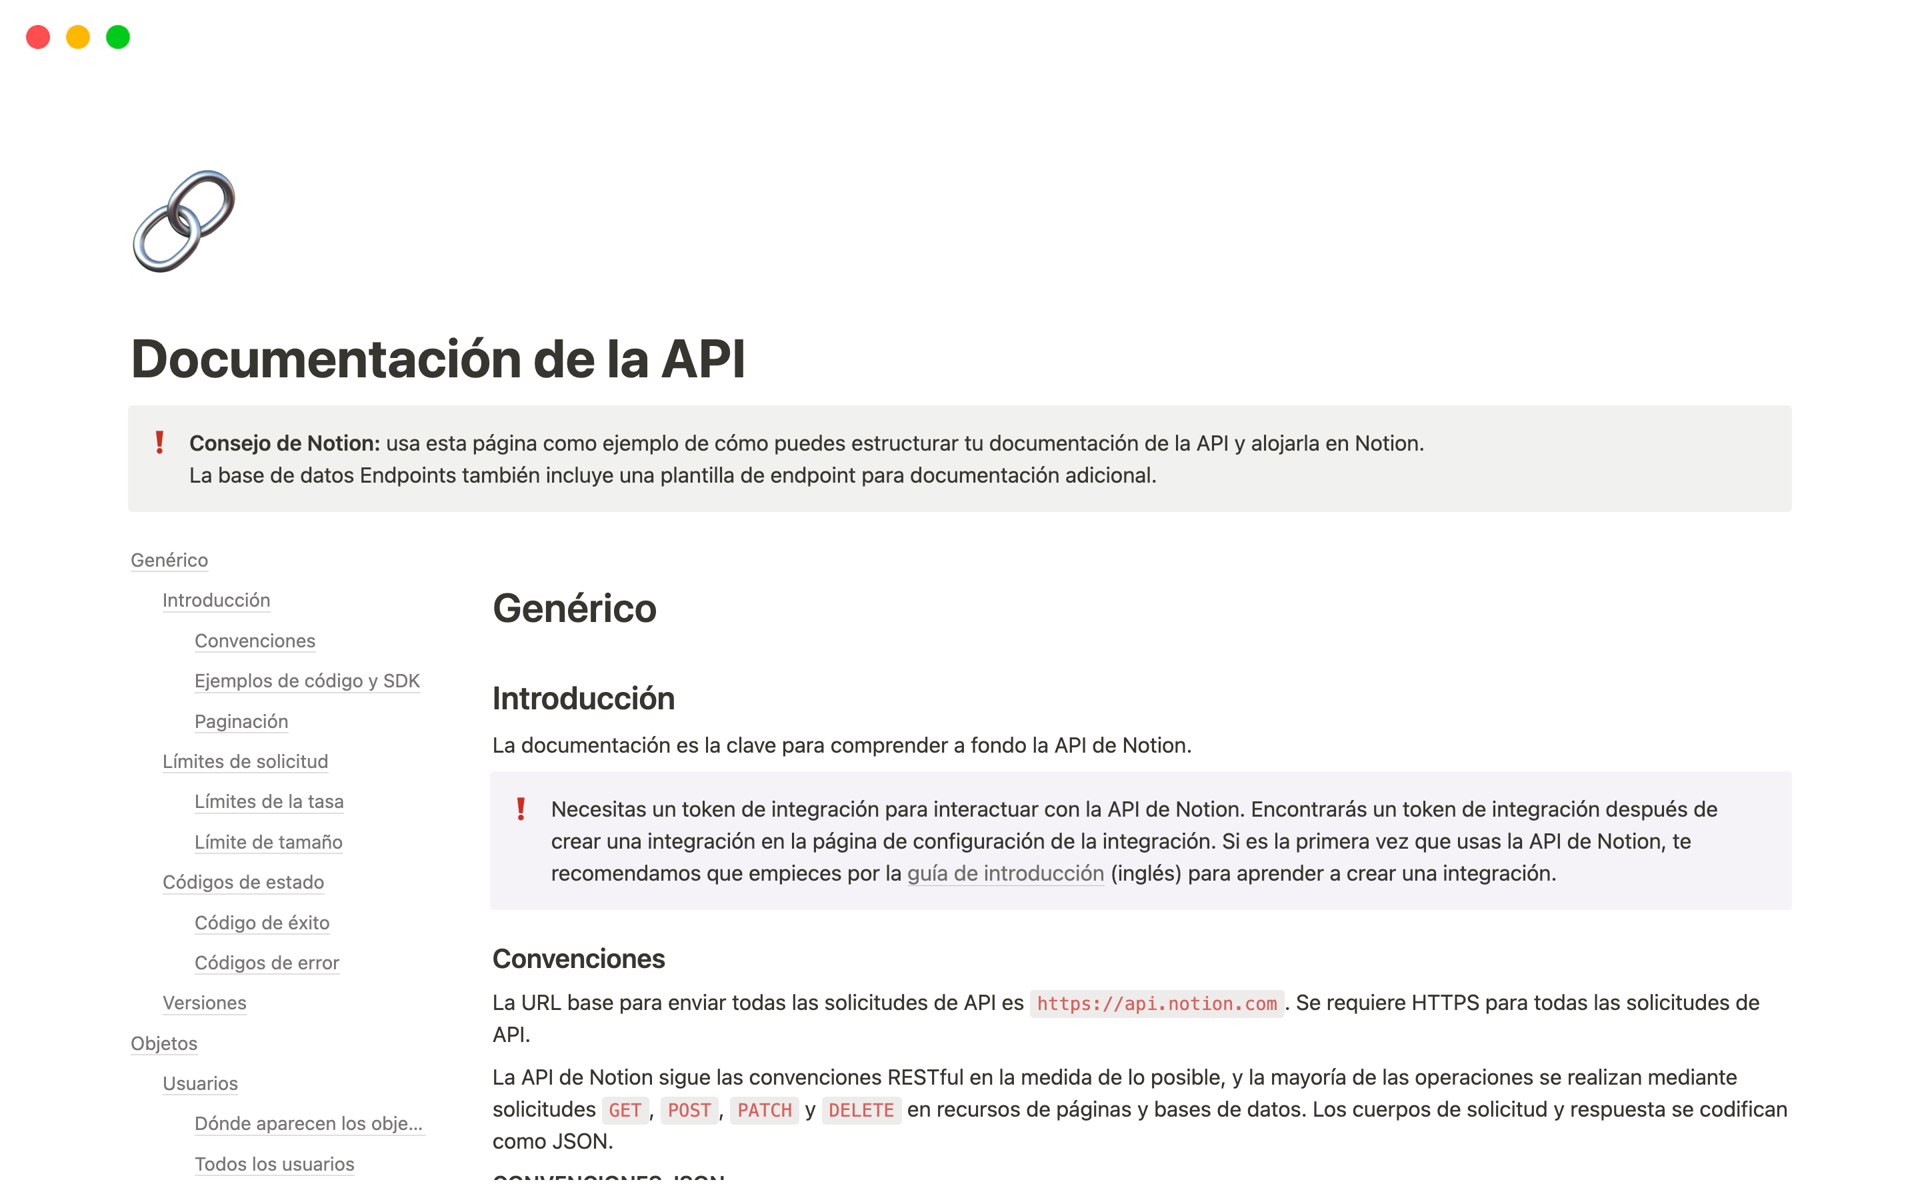 Vista previa de una plantilla para Documentación de la API